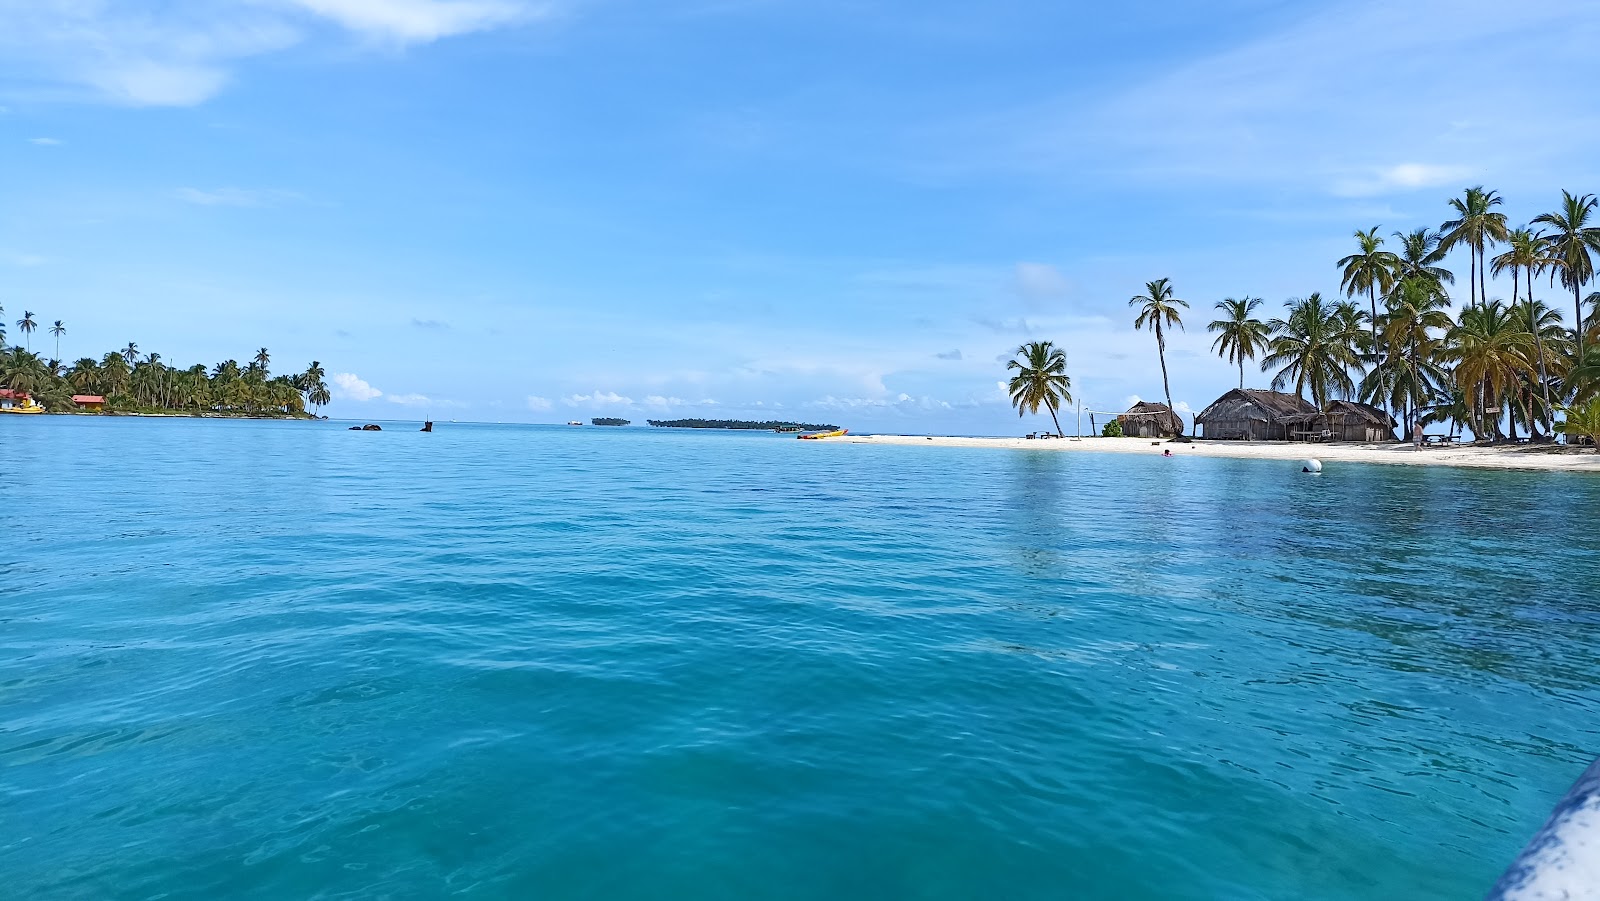 Miria Island beach'in fotoğrafı geniş plaj ile birlikte